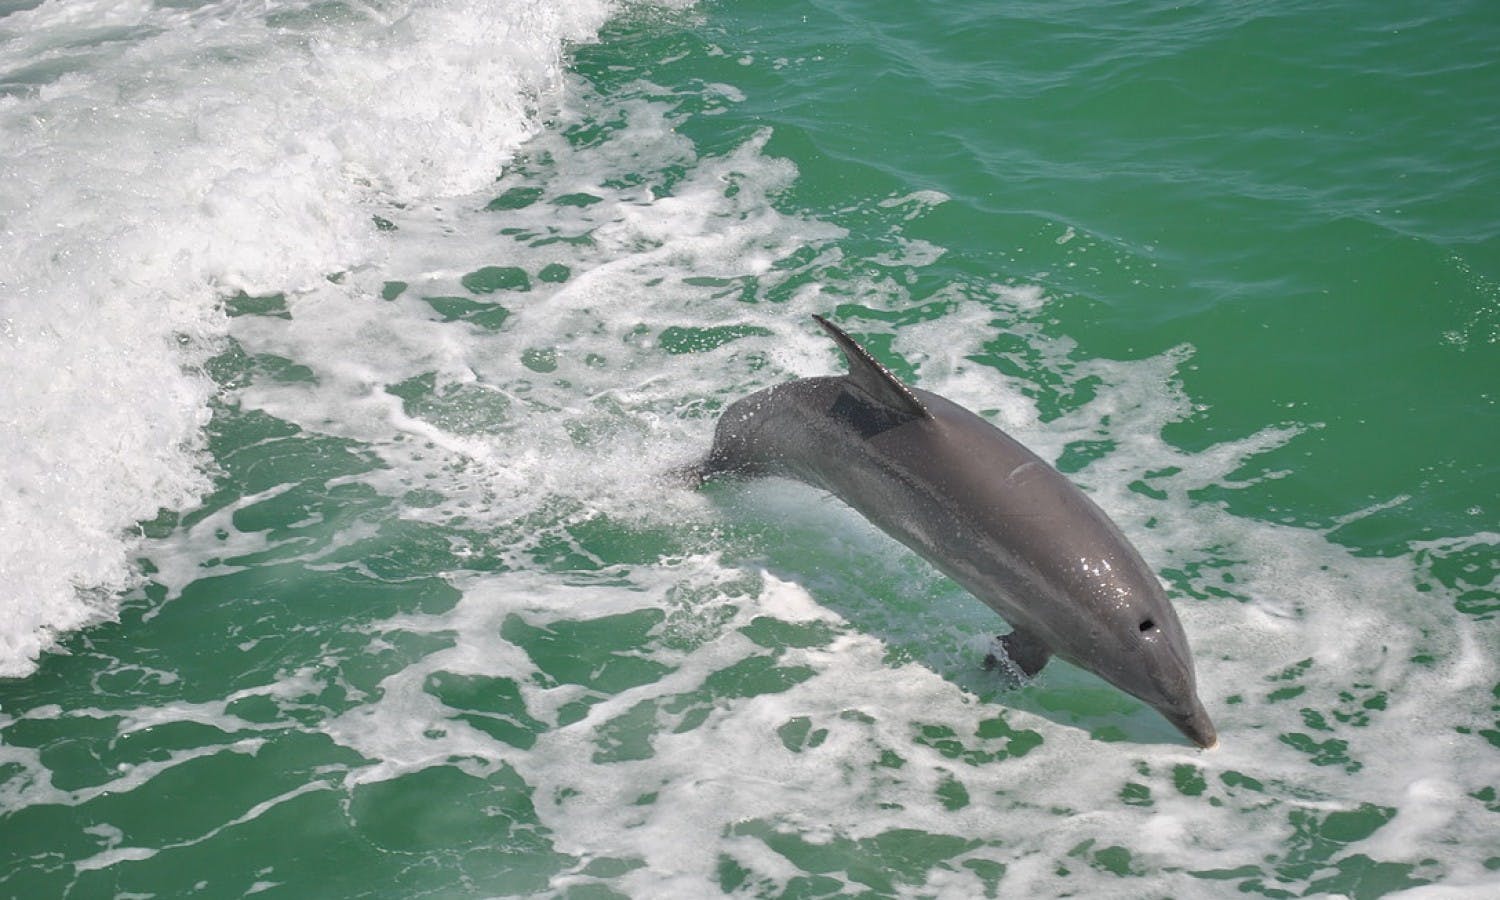 Clearwater Beach: Delfinbegegnungs-Bootsfahrt mit Geschenkkarte zum Mittagessen